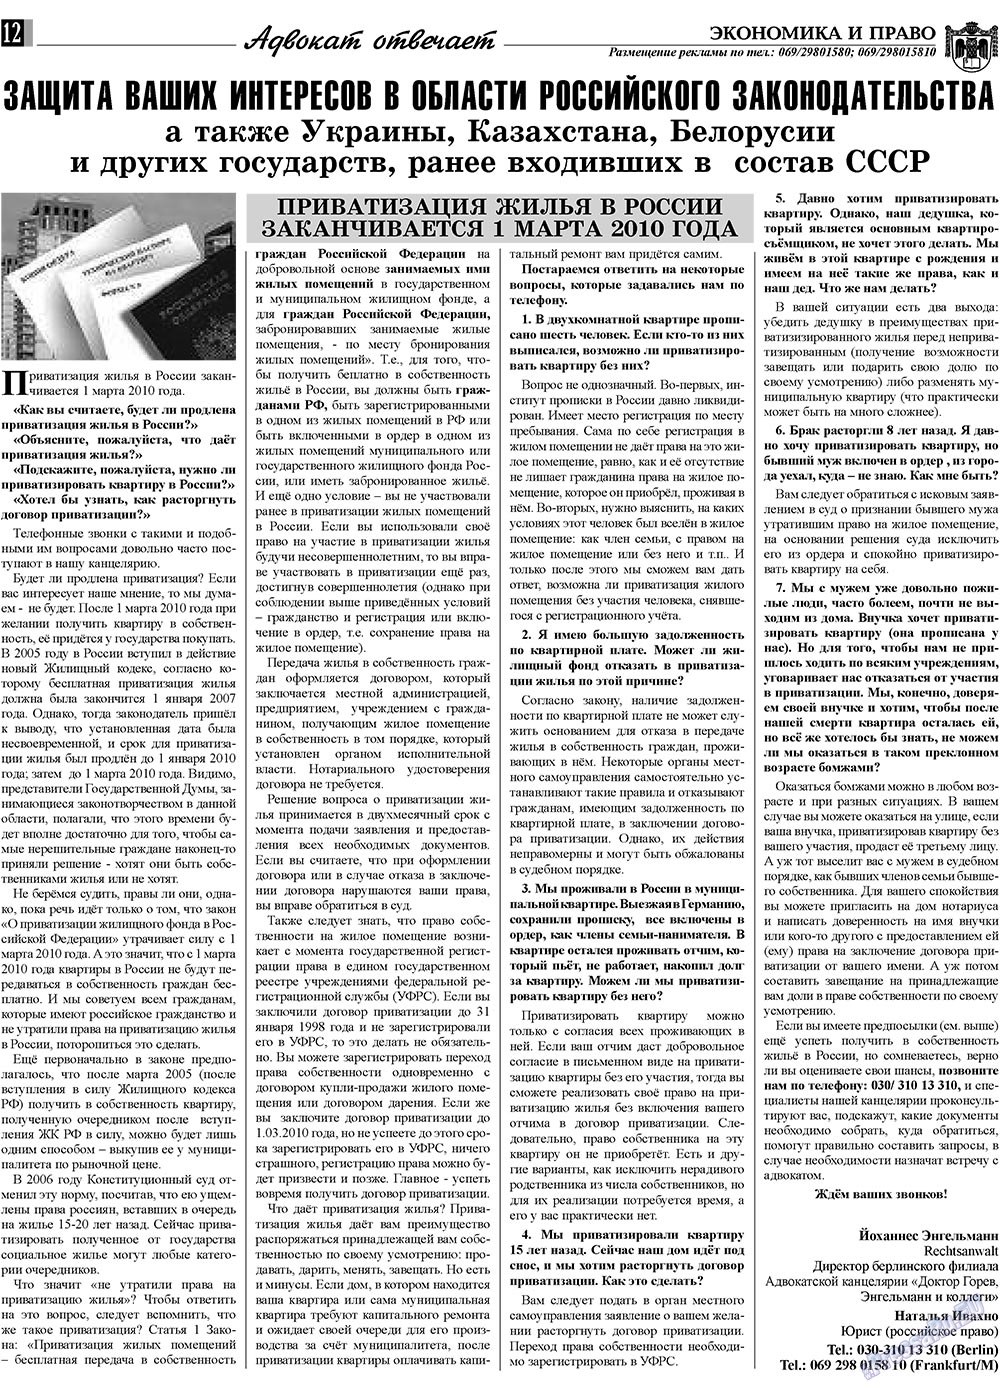 Экономика и право, газета. 2009 №10 стр.12